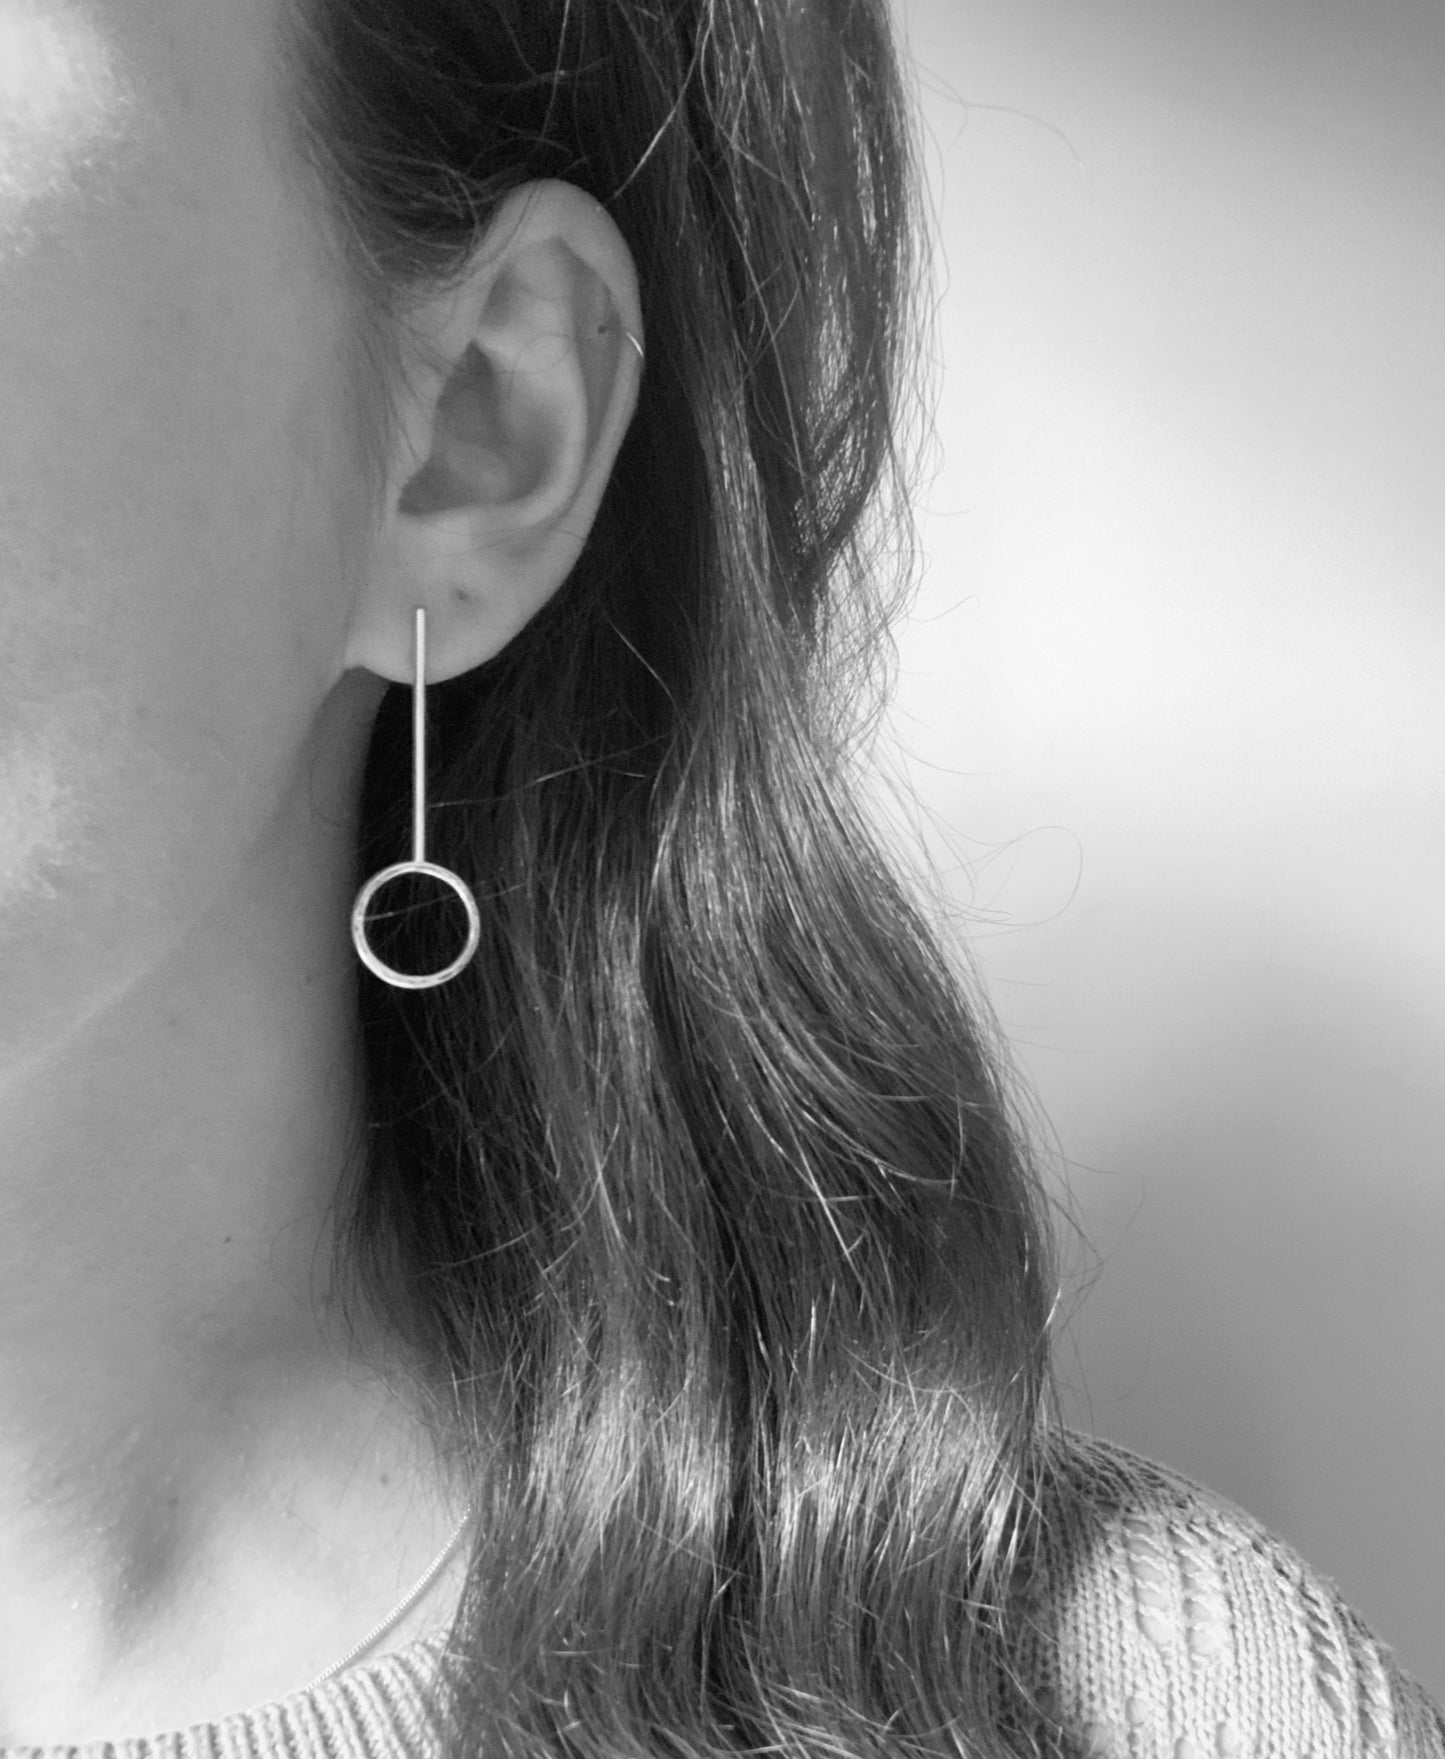 Silver mismatched stud earrings, asymmetrical earrings sterling silver